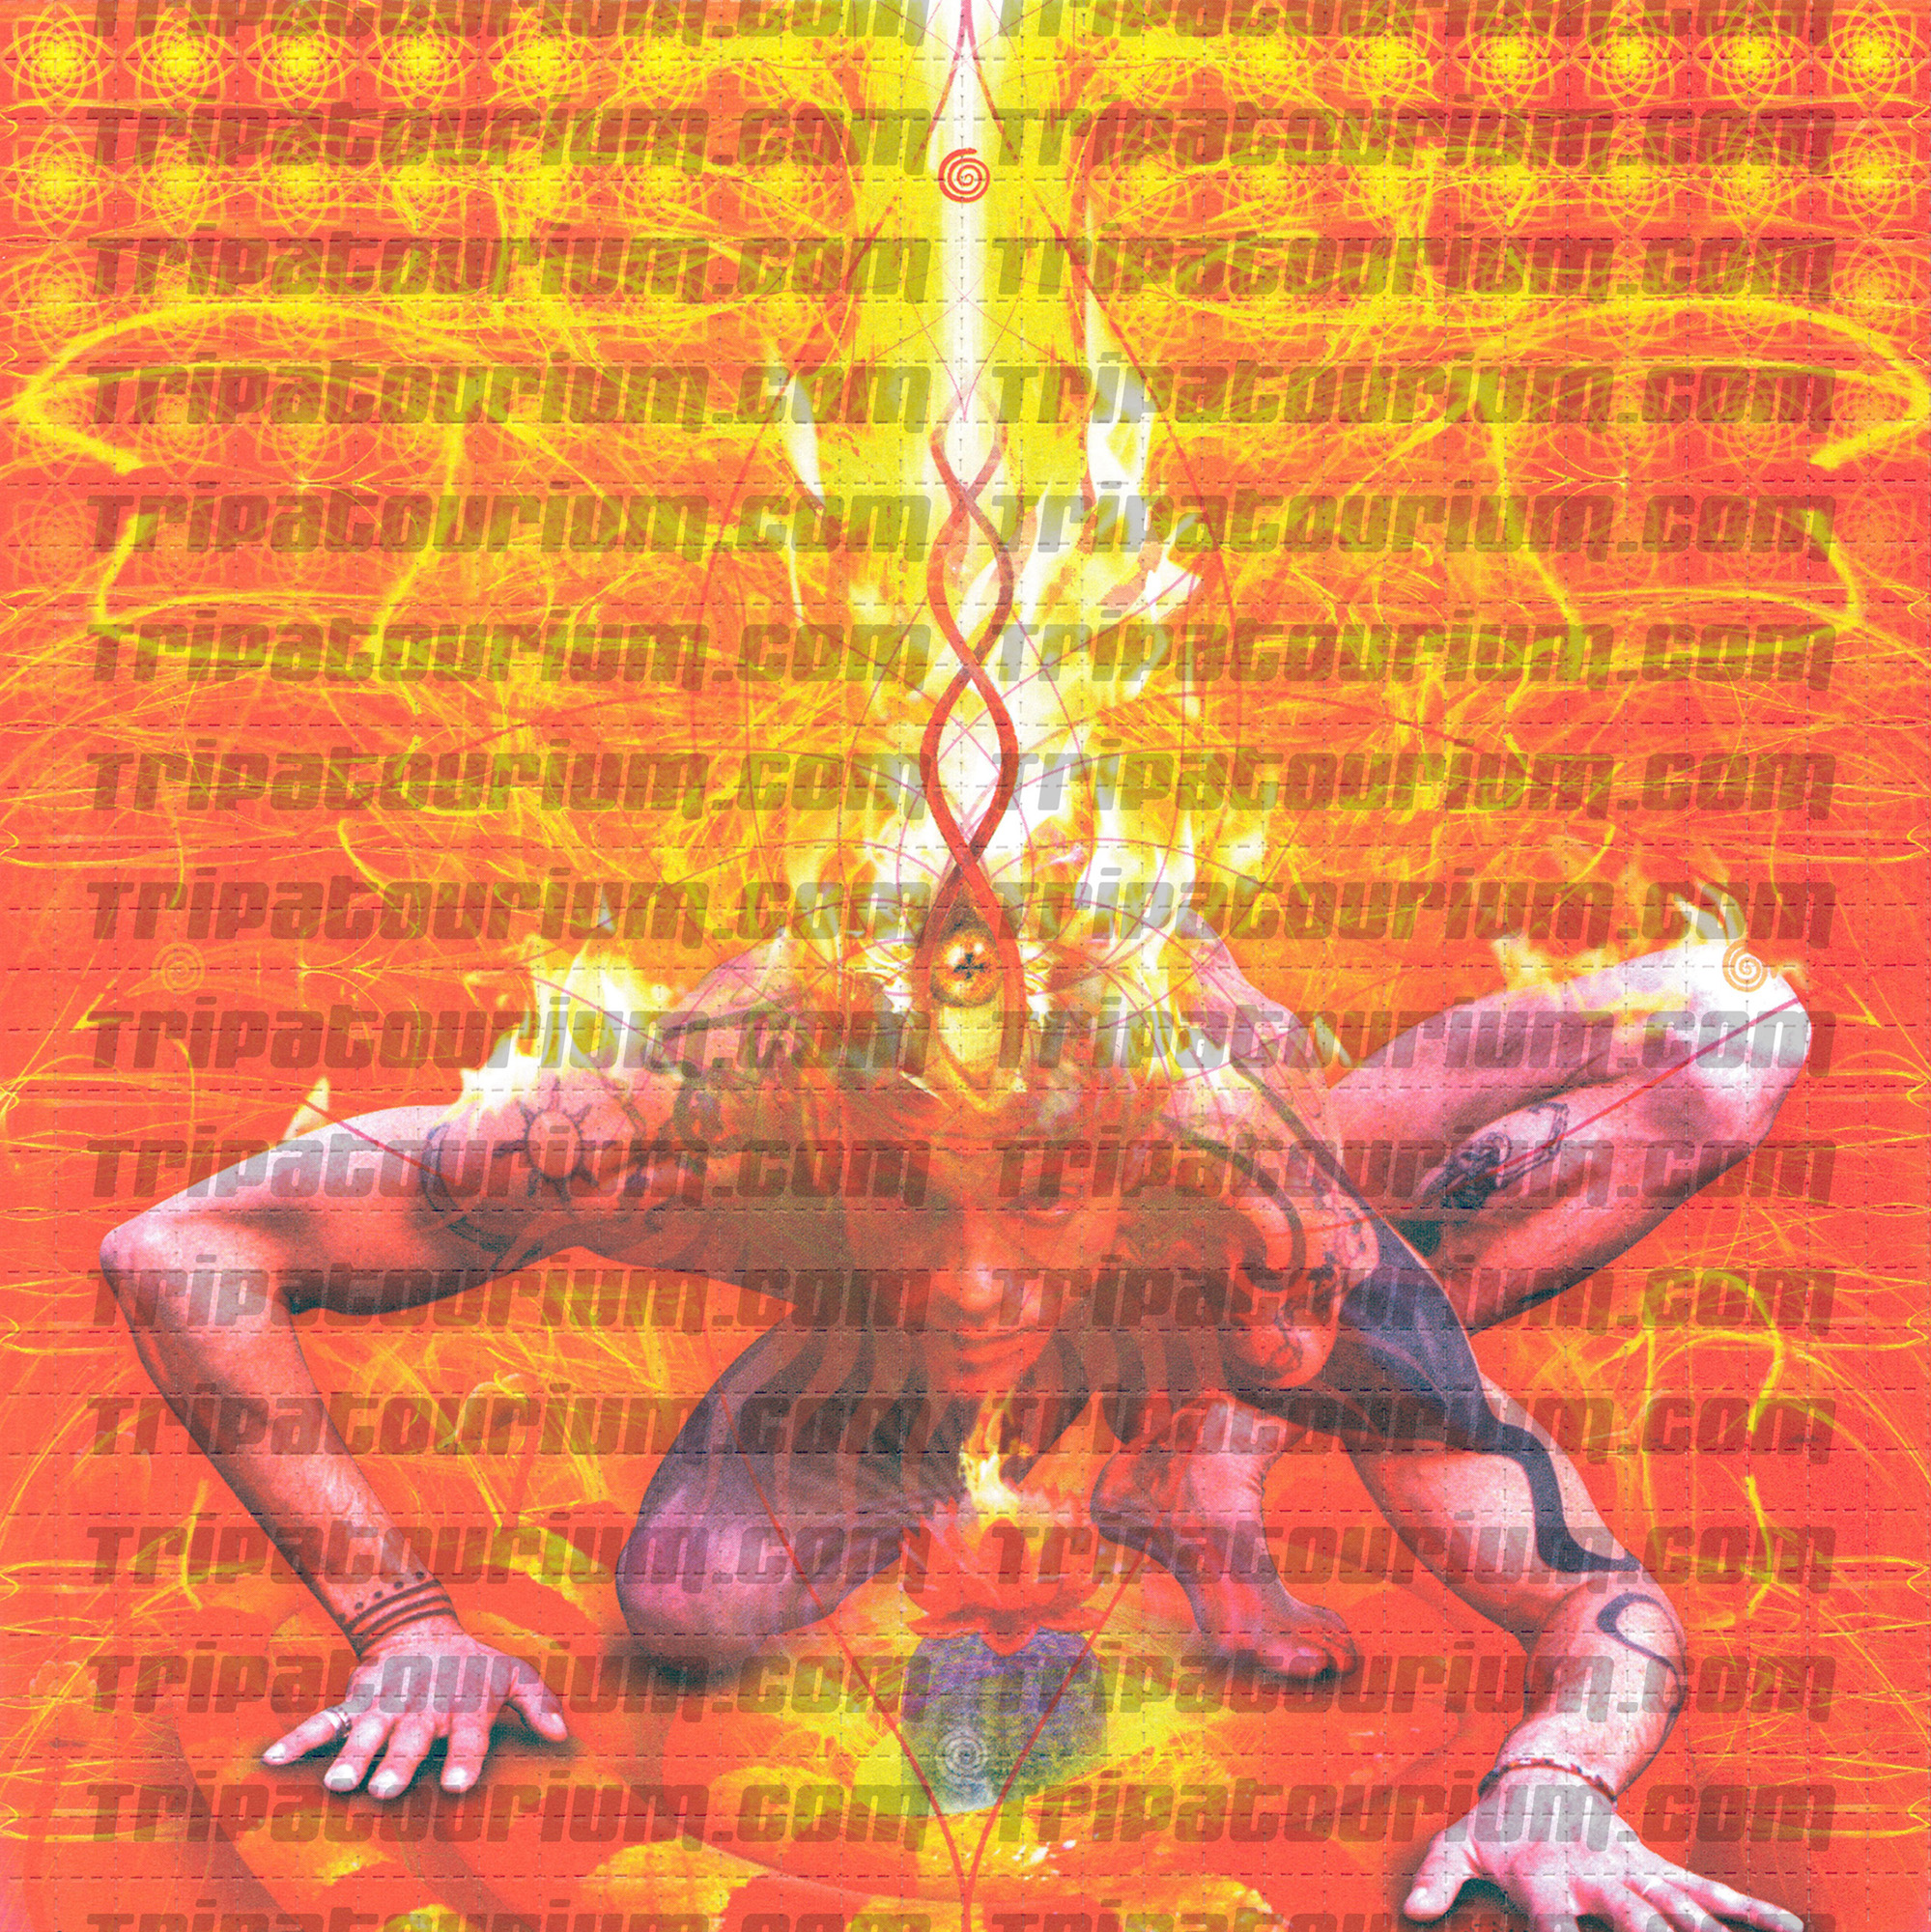 A scan of the LSD Blotter Art Print Muladhara by Stevee Postman